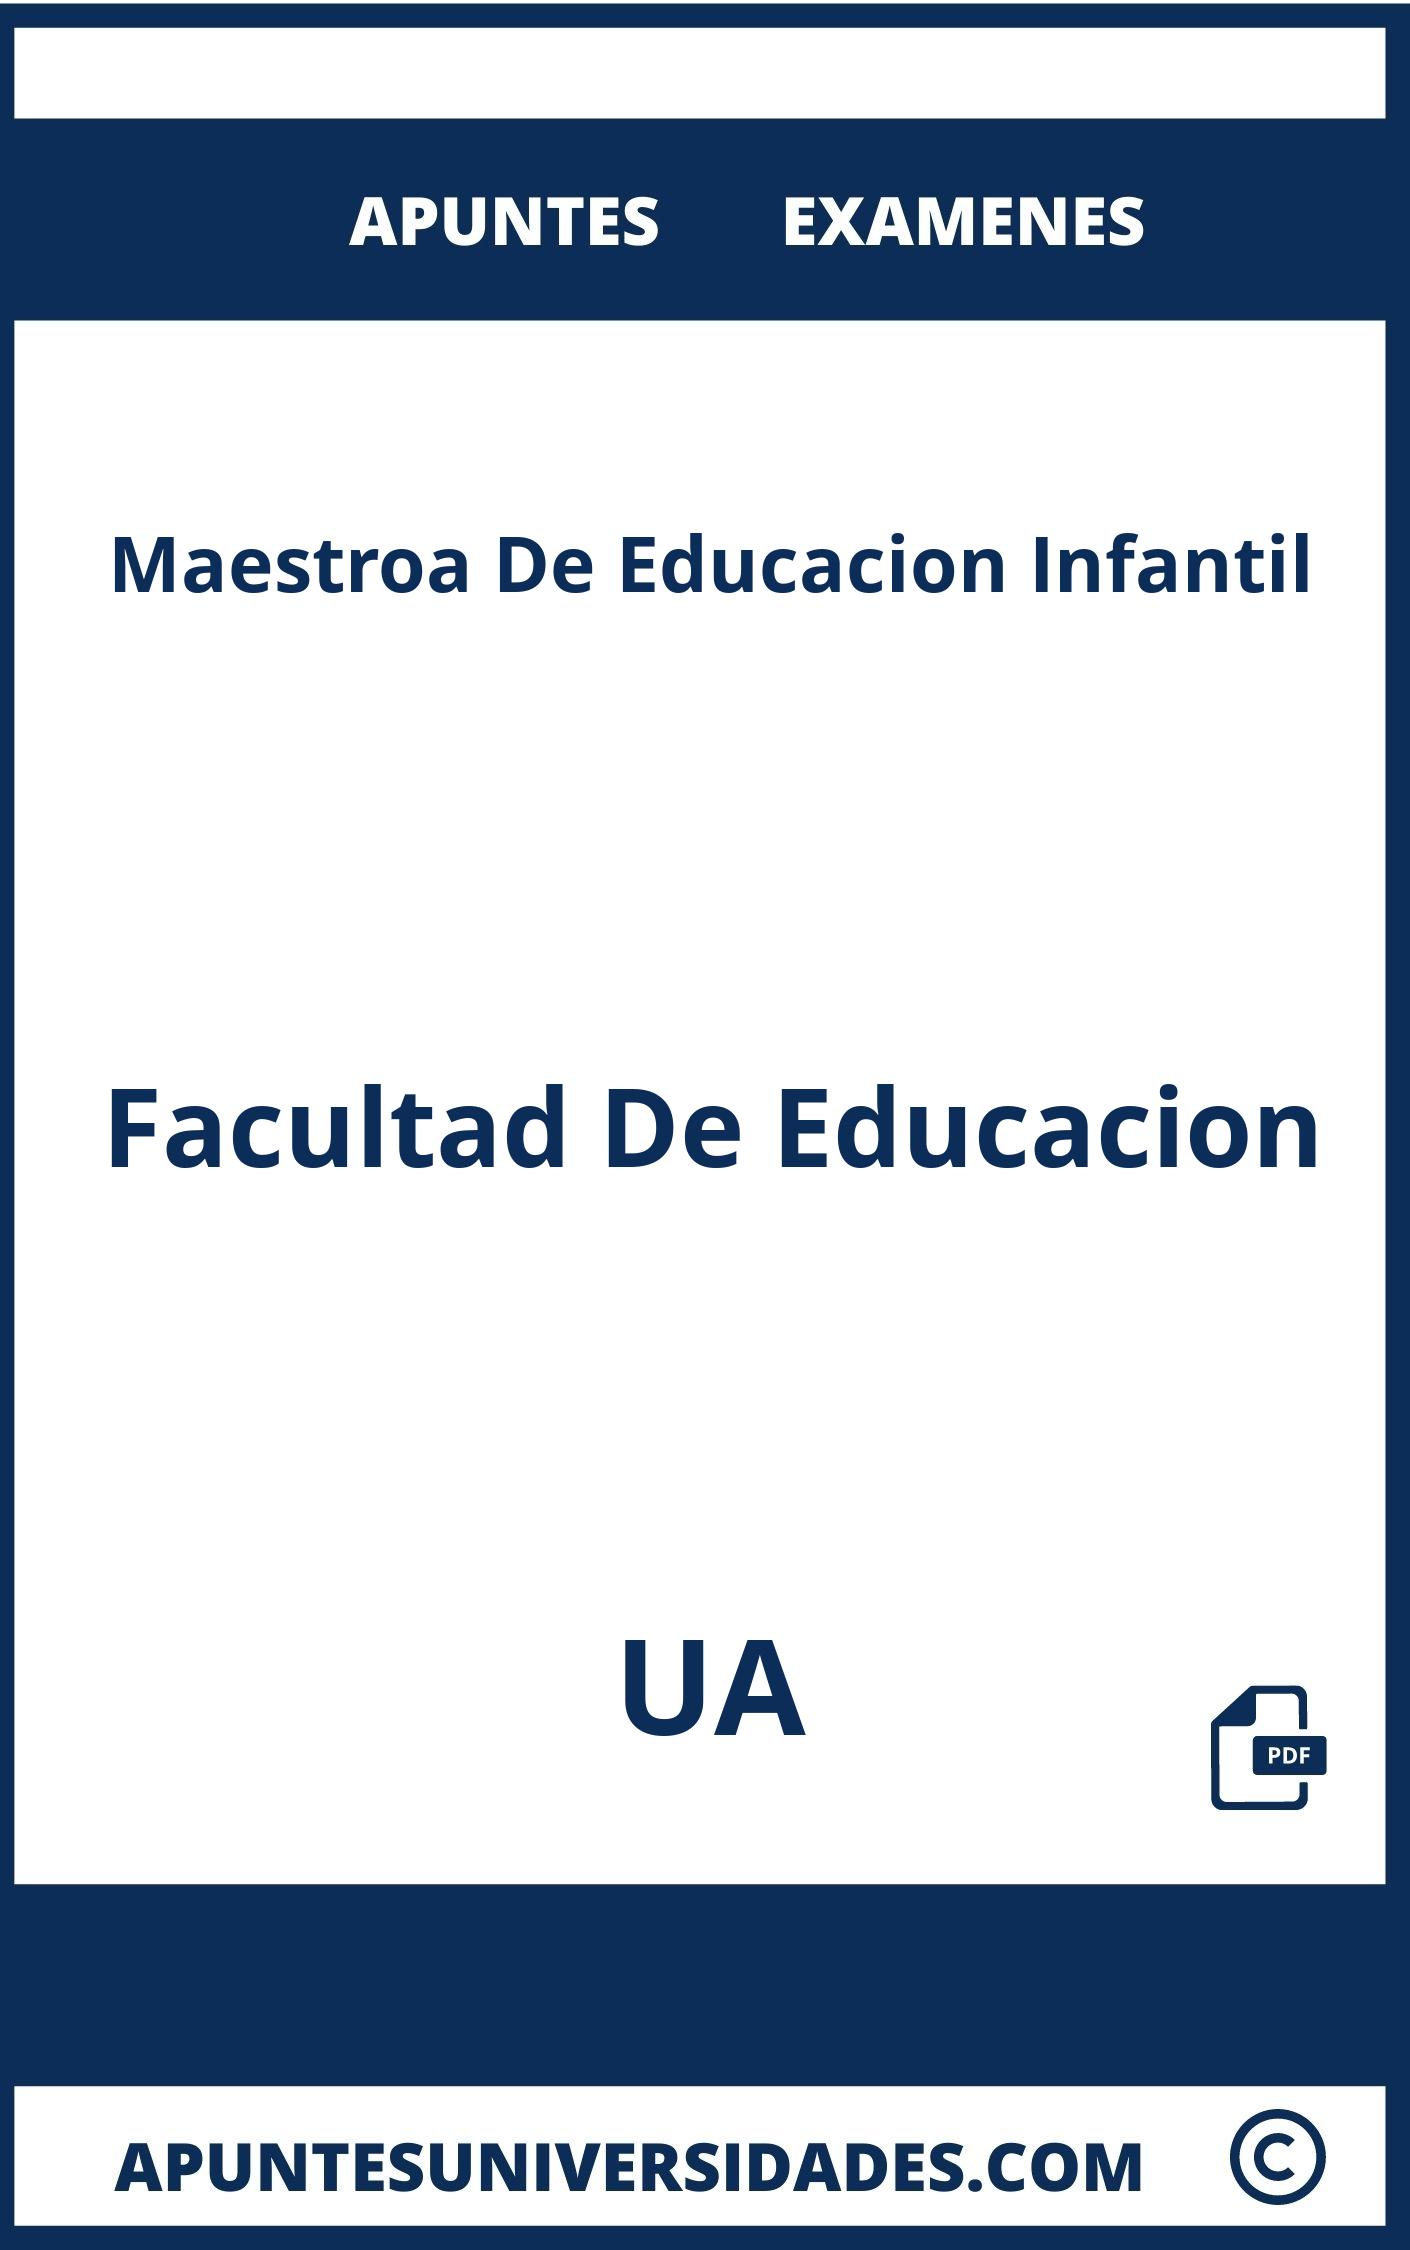 Examenes y Apuntes de Maestroa De Educacion Infantil UA